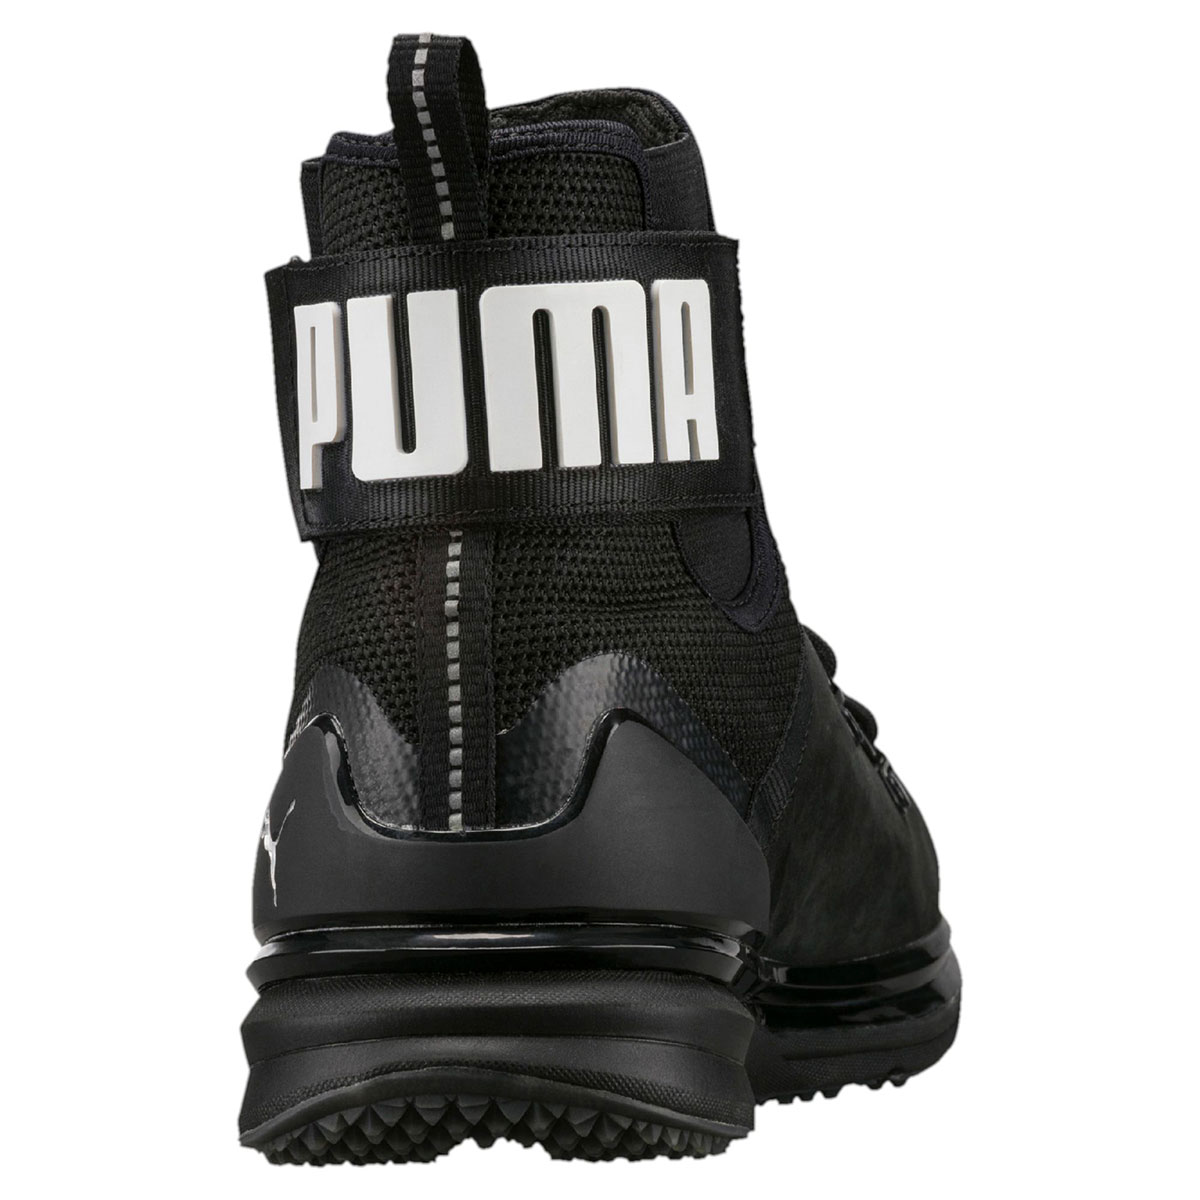 Puma Ignite Limitless Boot Leath Мъжки спортни обувки 190563-01